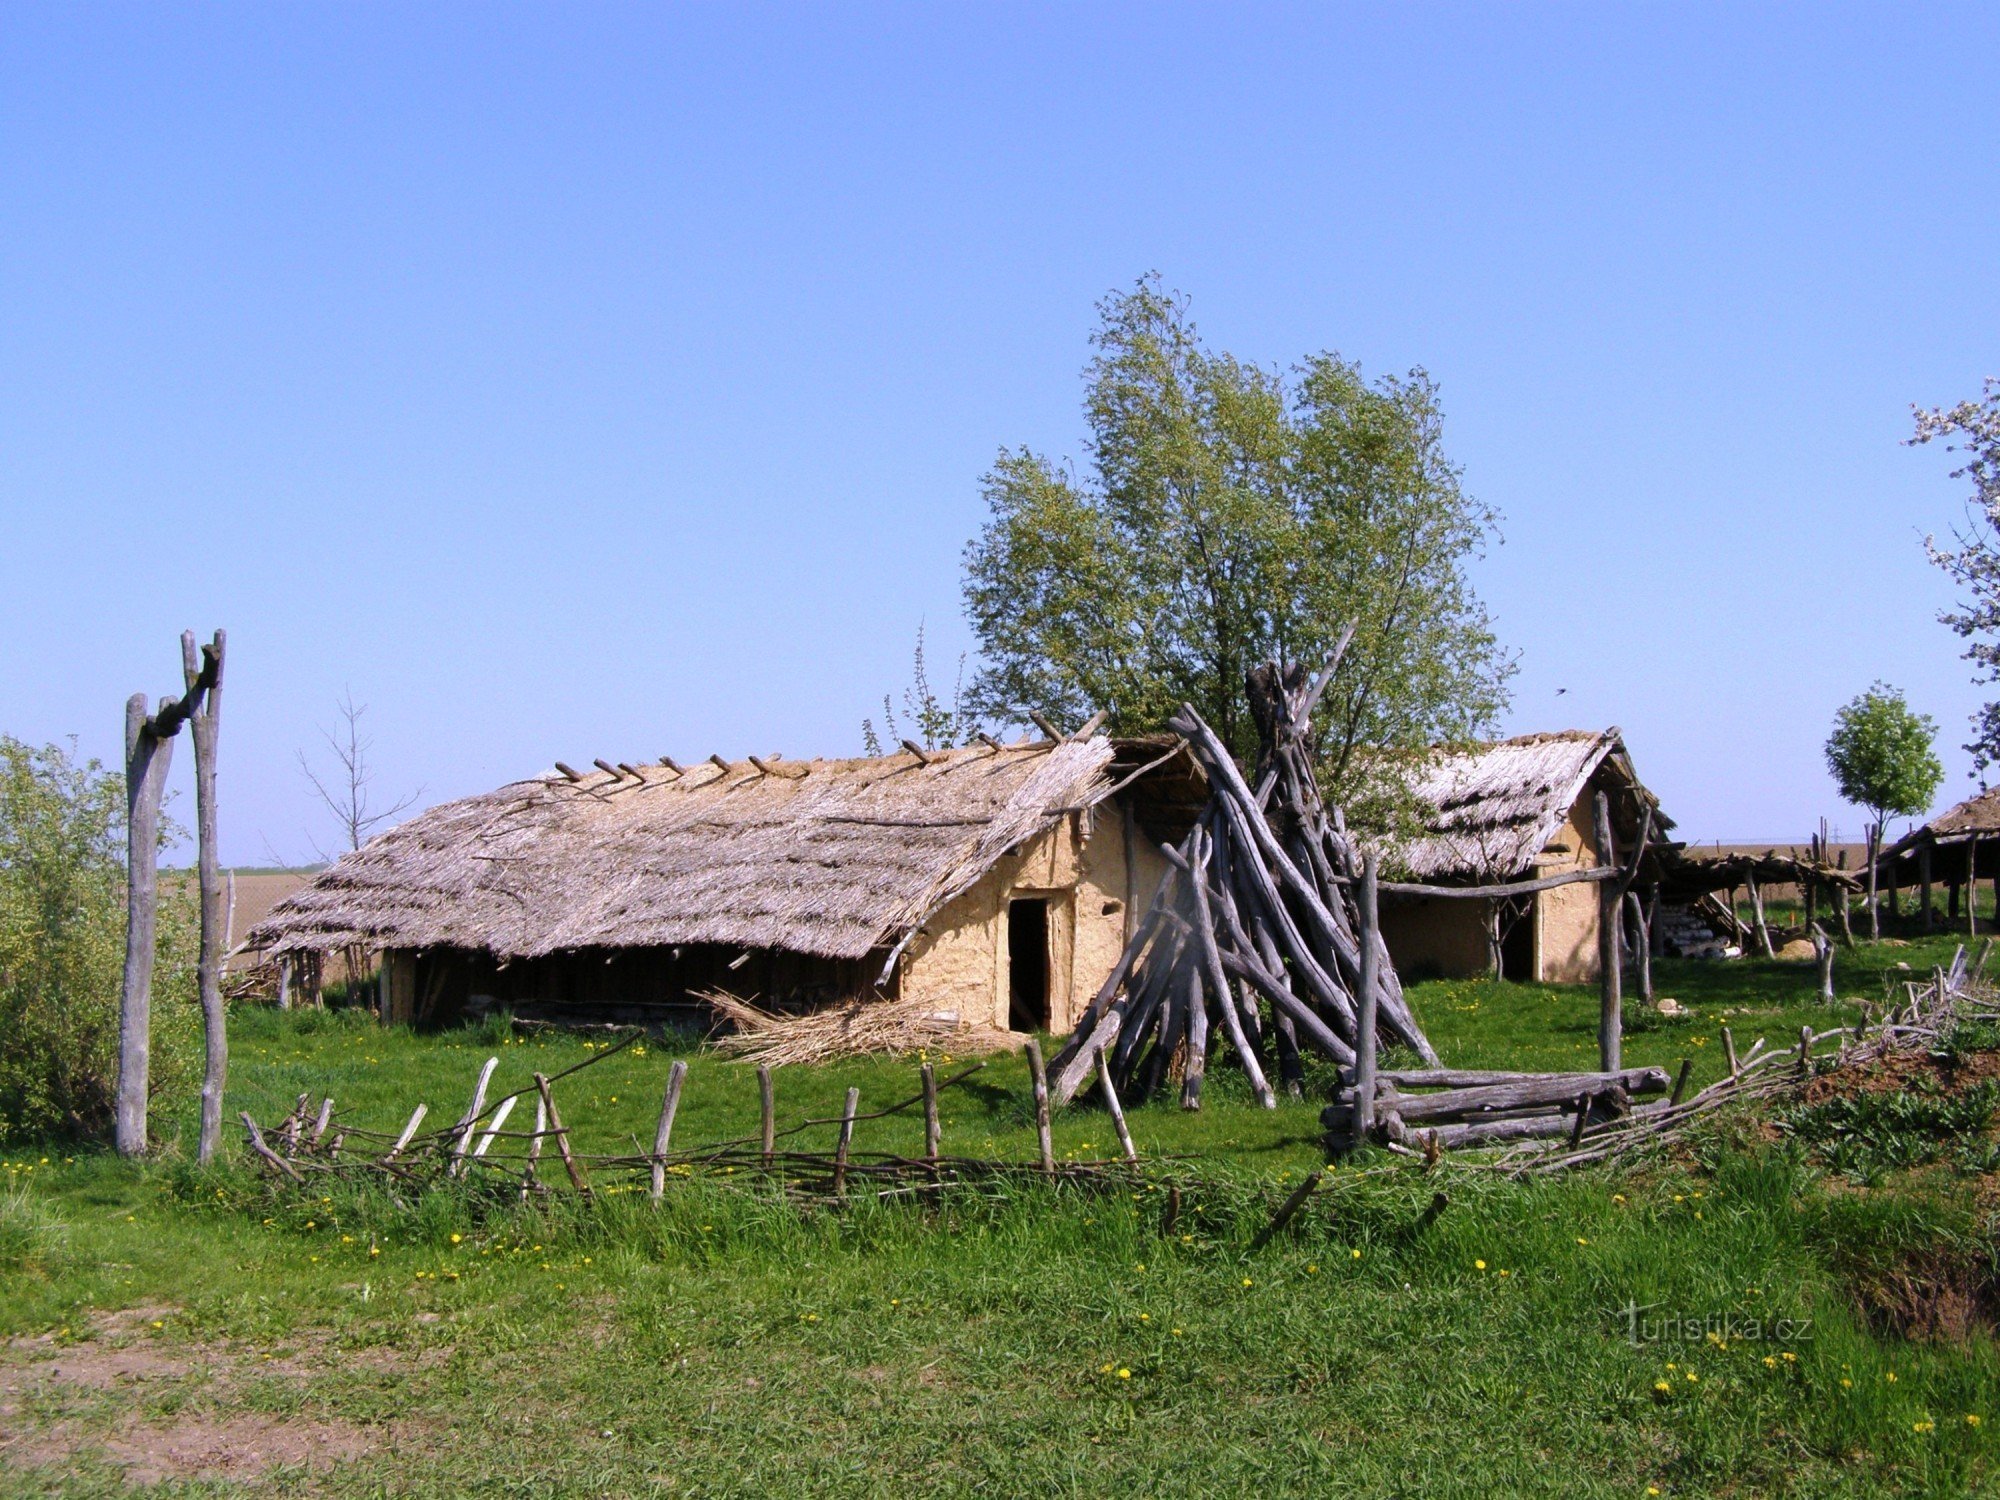 Všestary - Center for Experimental Archaeology